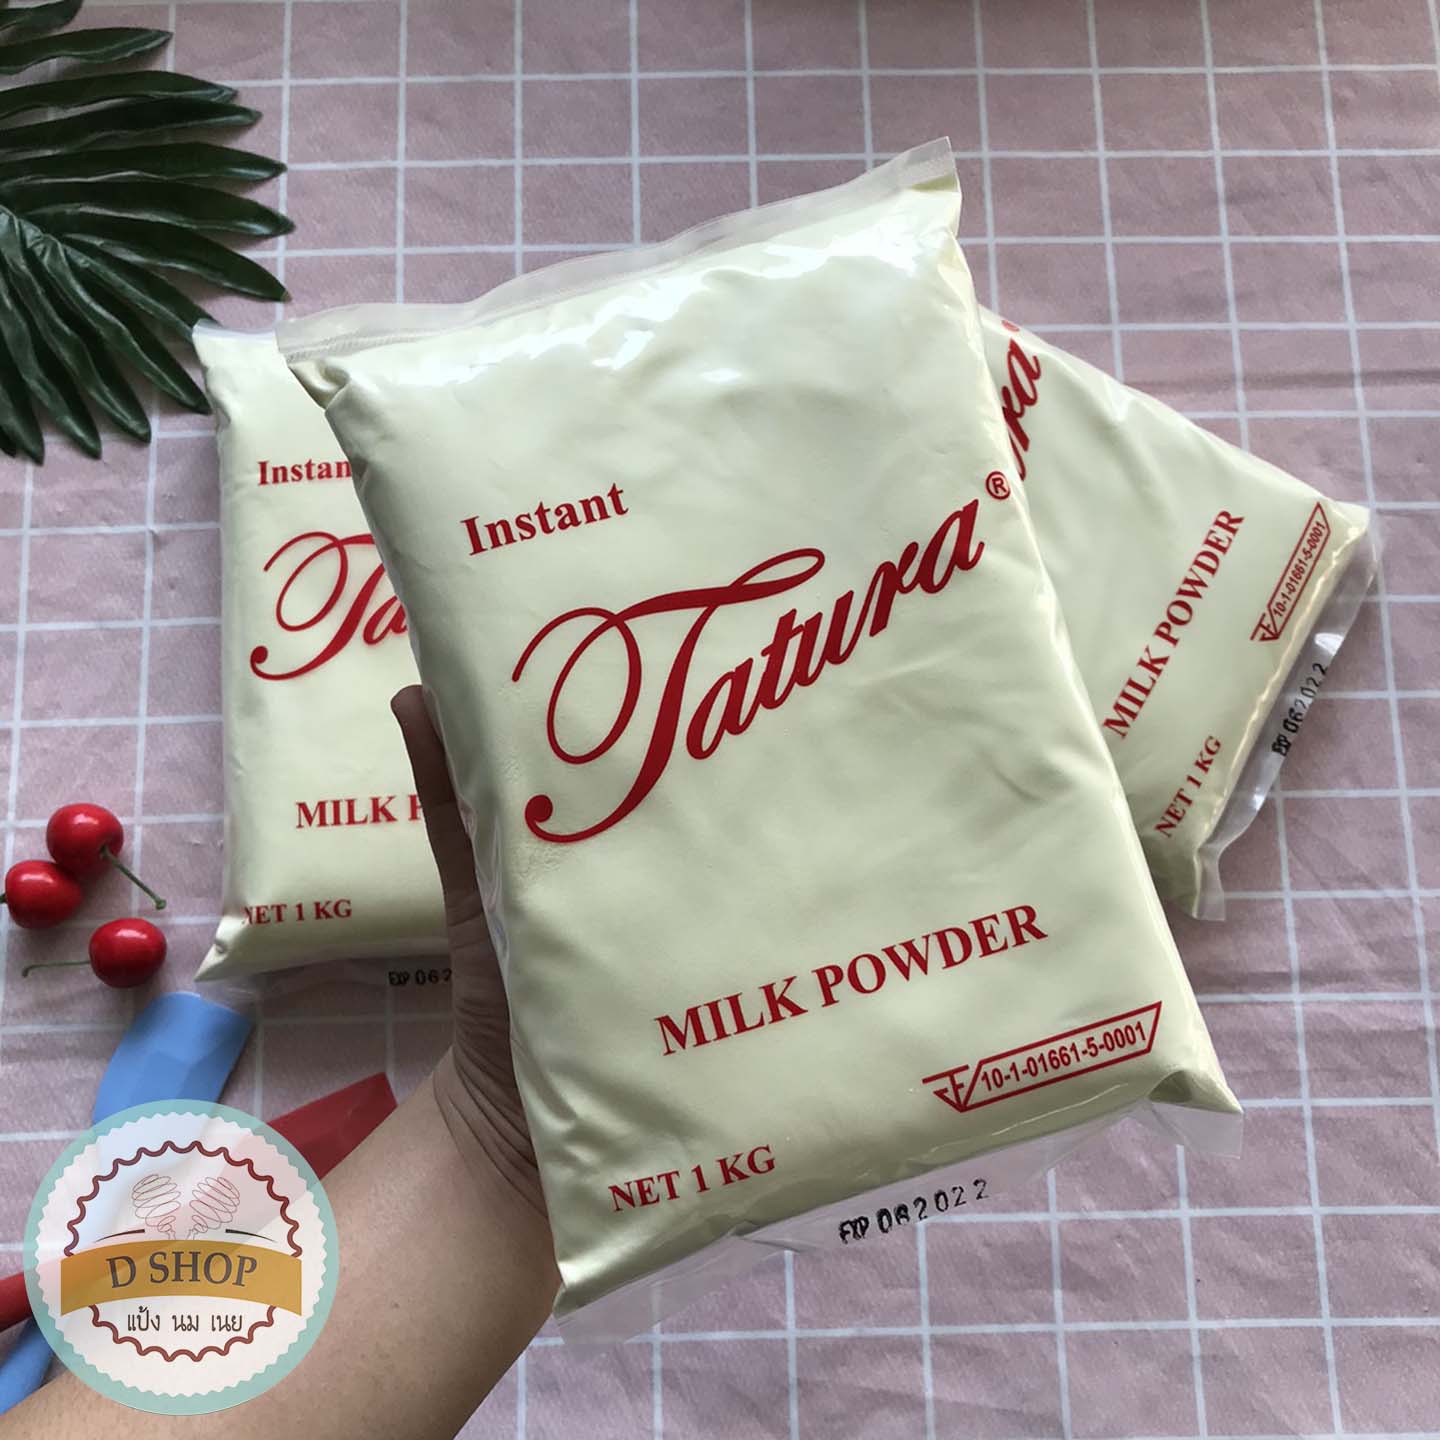 ข้อมูลเกี่ยวกับ หัวนมผง นมผงตาตูล่า 1 กิโลกรัม นมผง นมผงทาทูร่า นมผงเต็มมันเนย Instant Tatura Milk Powder นมผงสำหรับเบเกอรี่ Full cream milk powder นมผงแท้ 100% ตาตูร่า